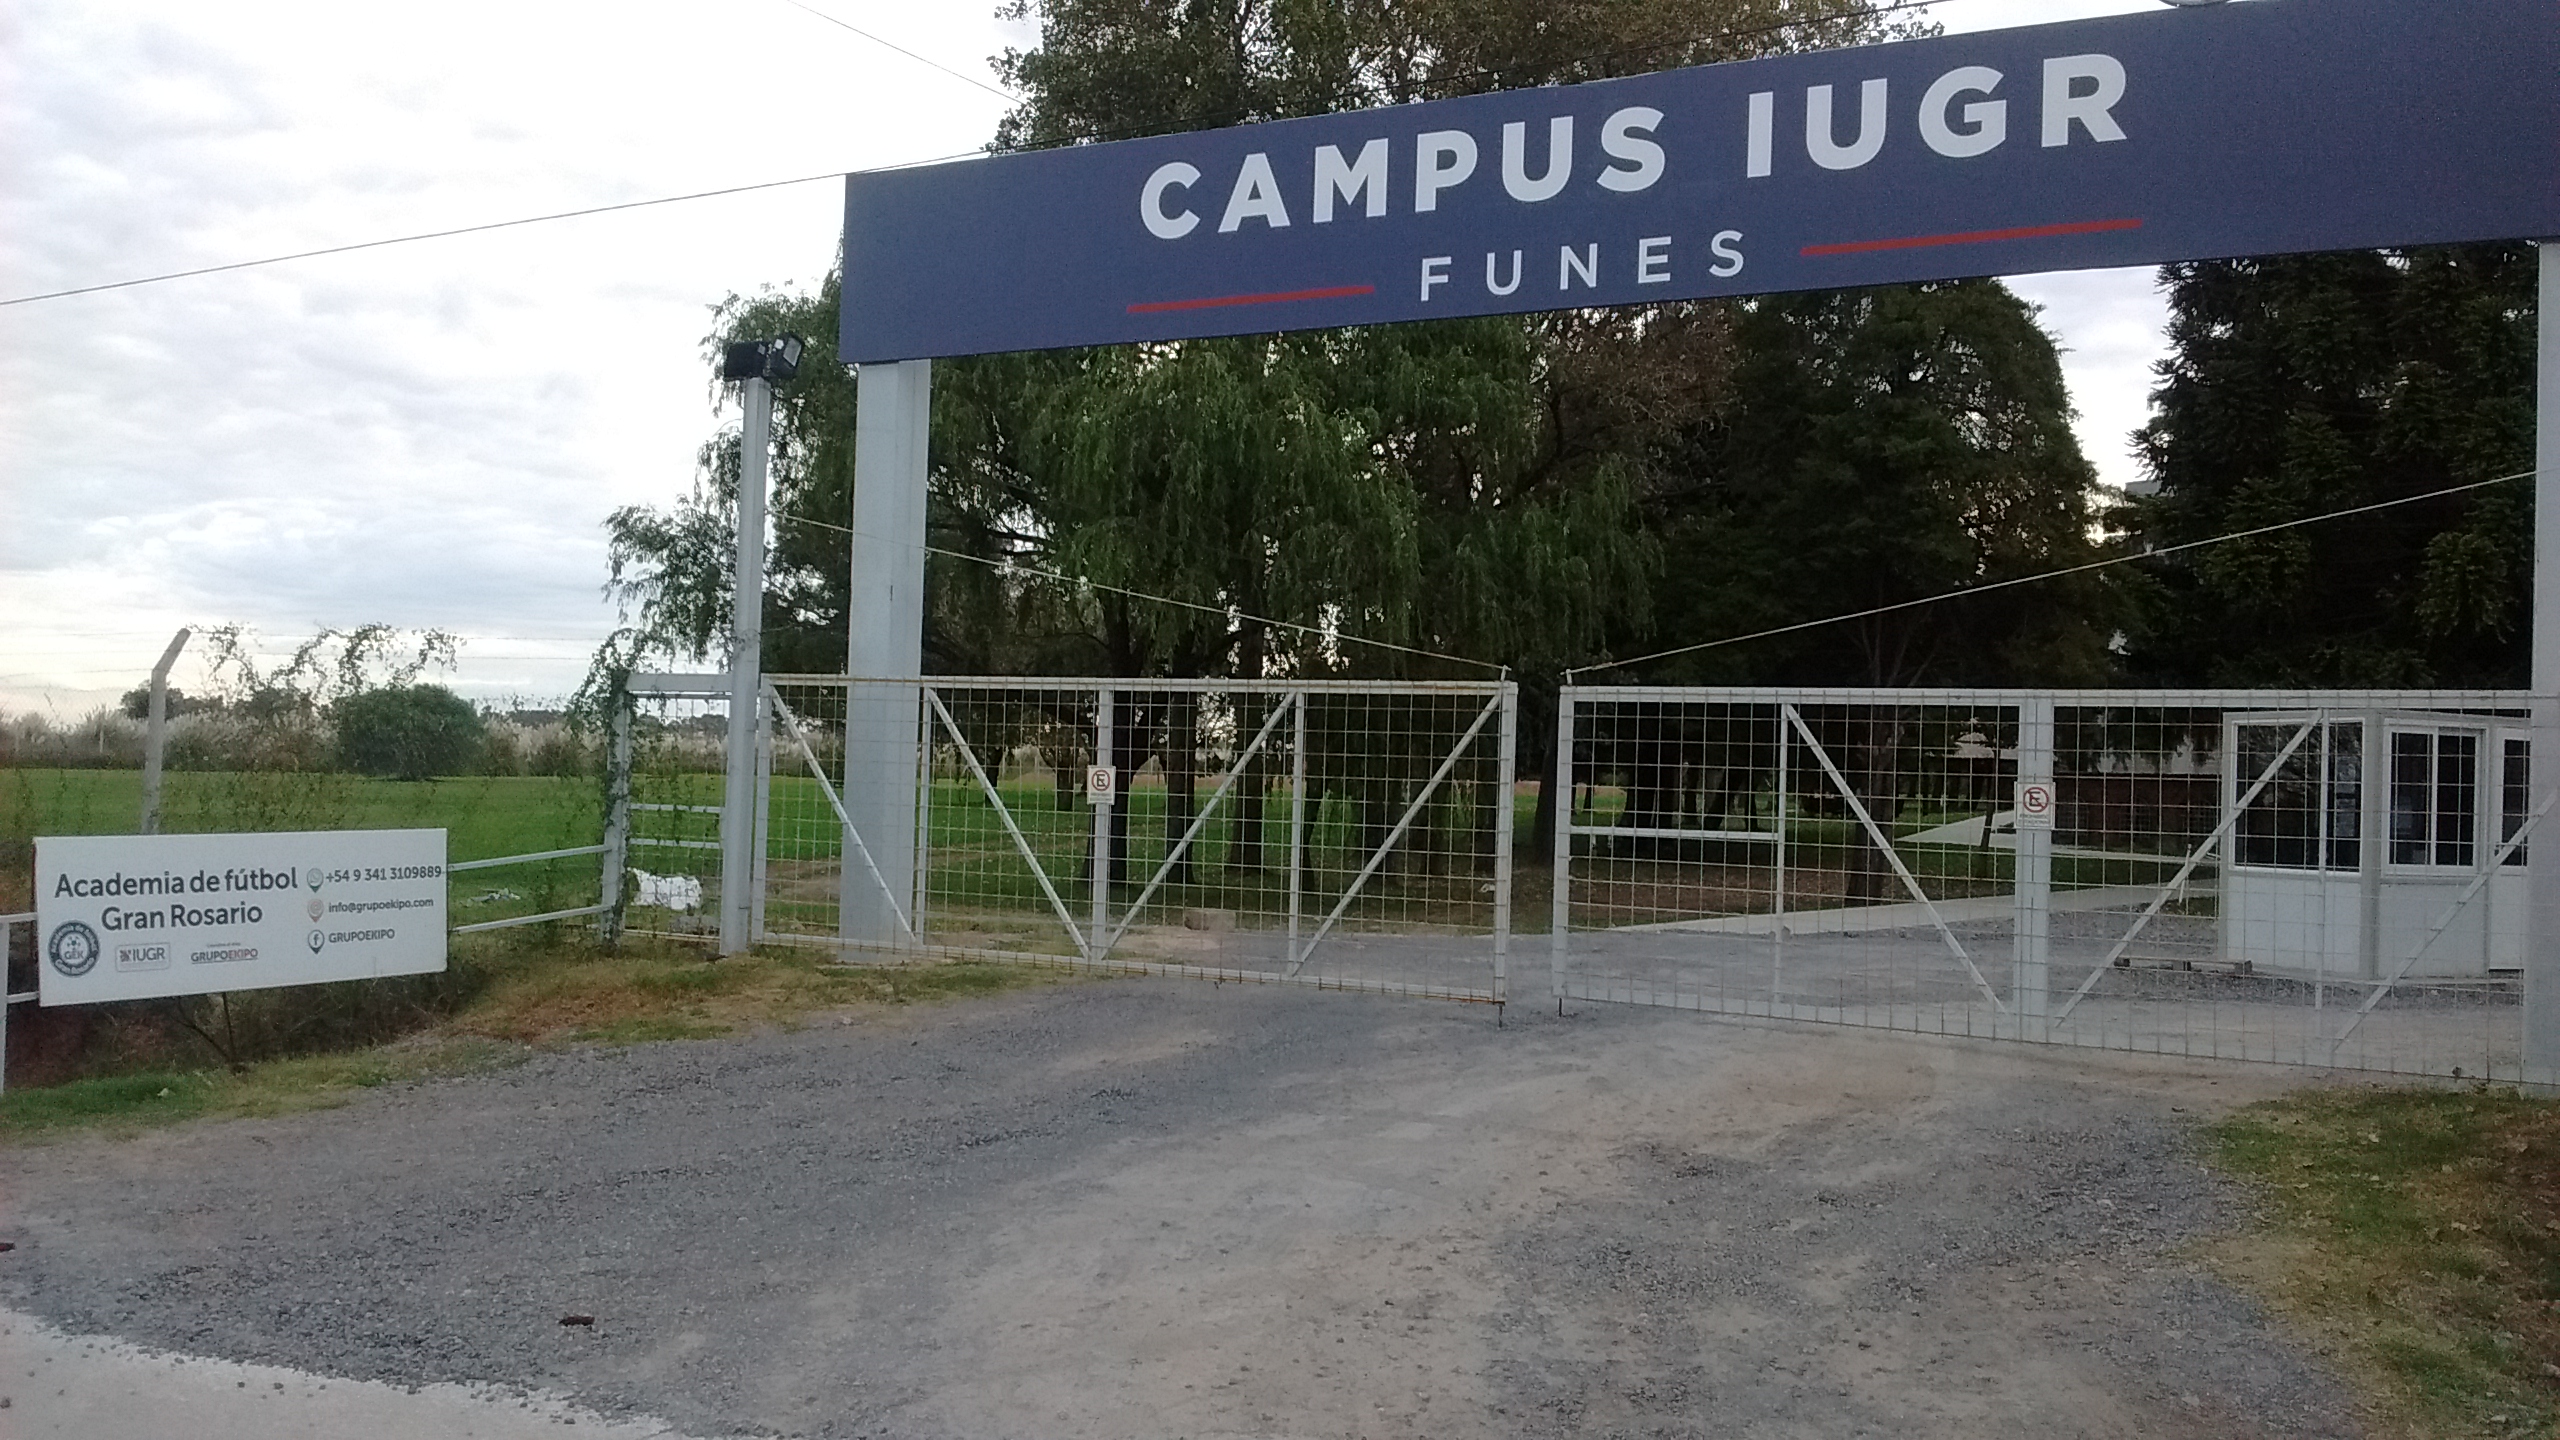 Importante institución educativa lanzó una busqueda laboral en Funes